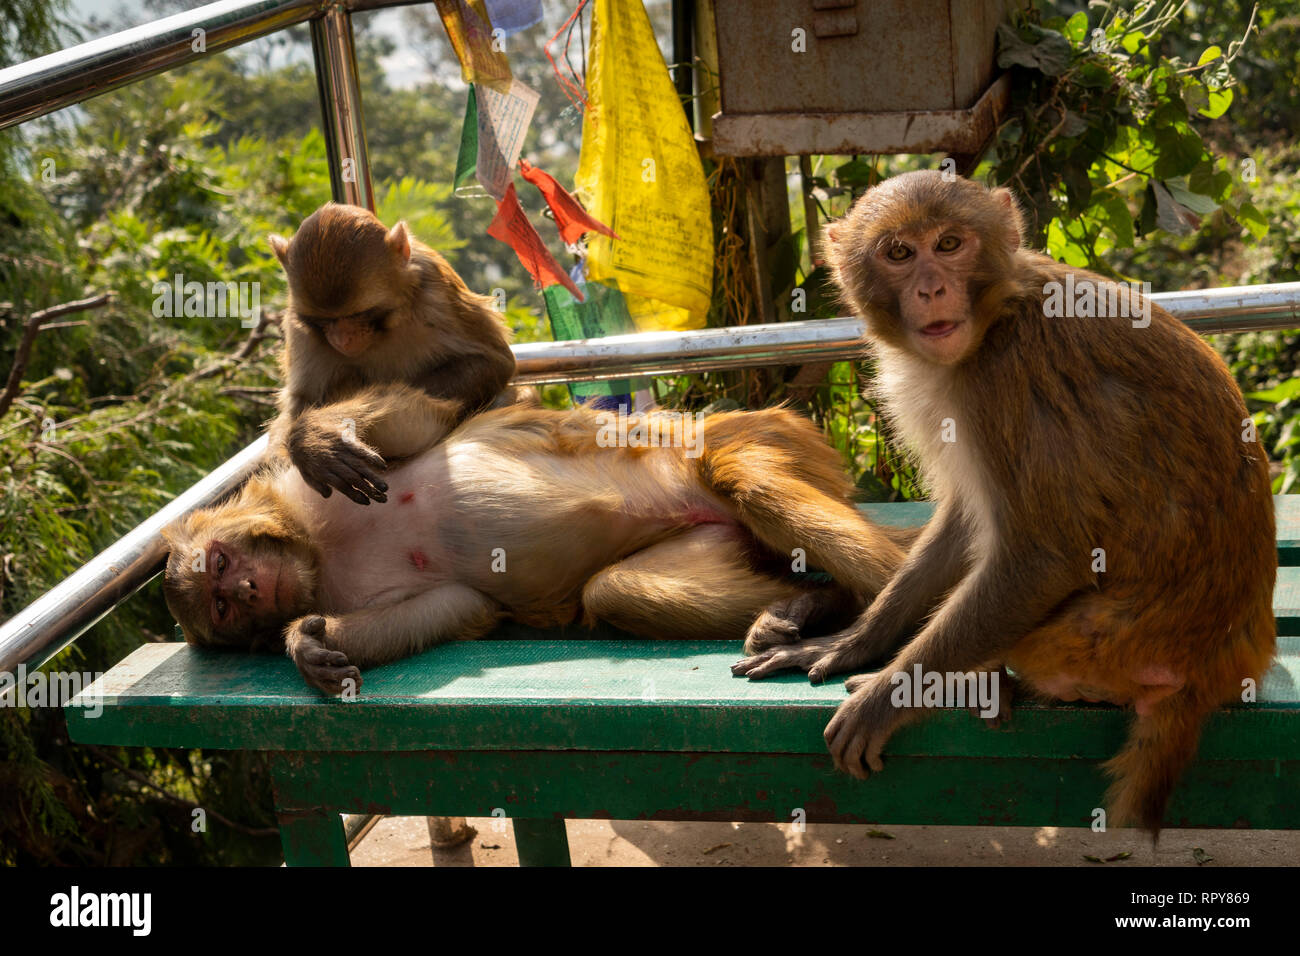 Nepal, Kathmandu, Swayambhunath Temple, macaque, monkeys grooming on steps to stupa Stock Photo